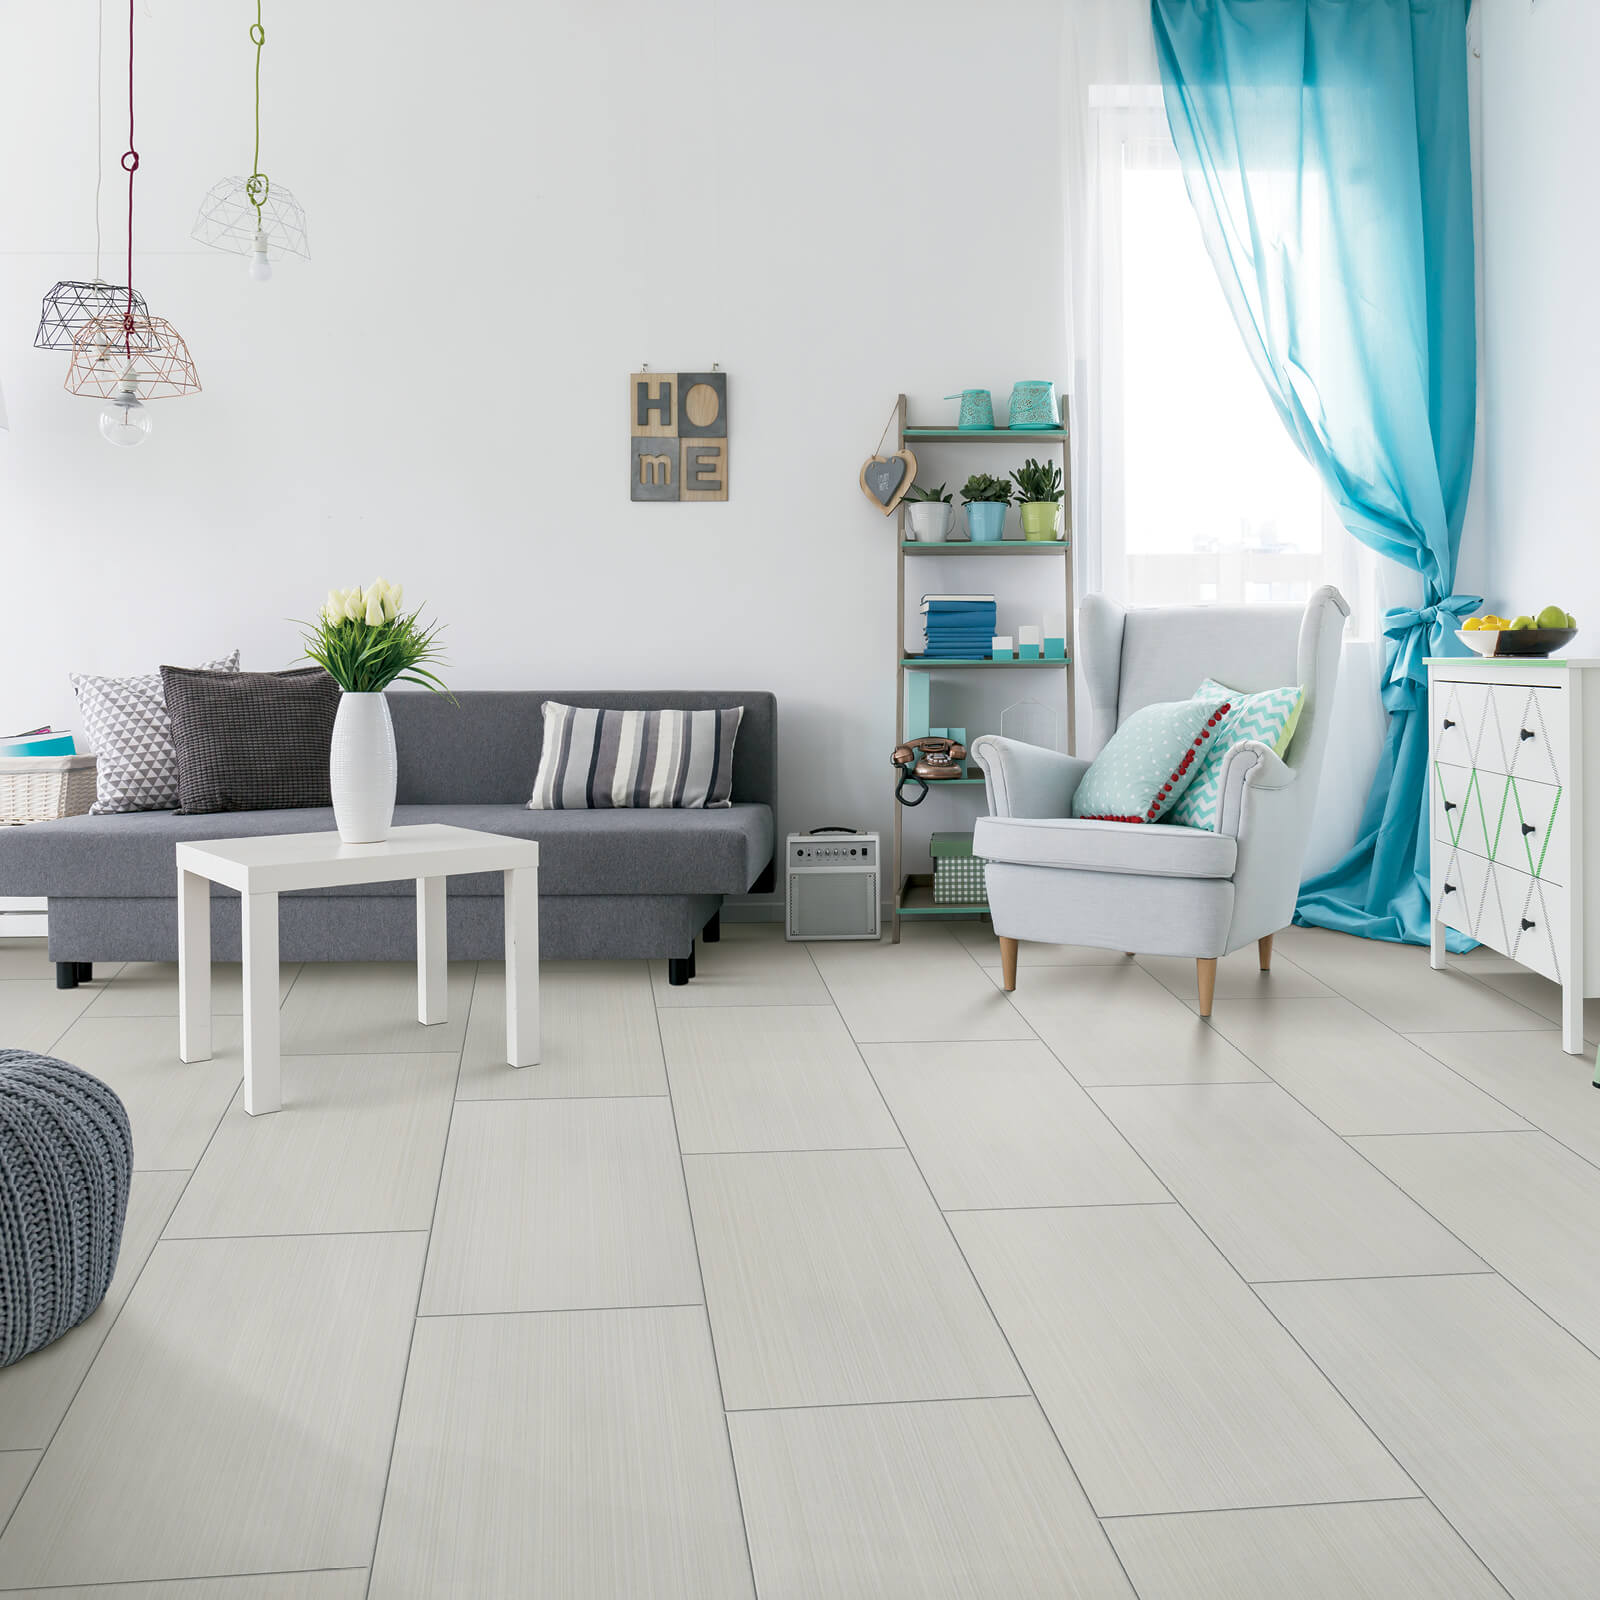 Tile flooring for living room | CarpetsPlus Of Wisconsin